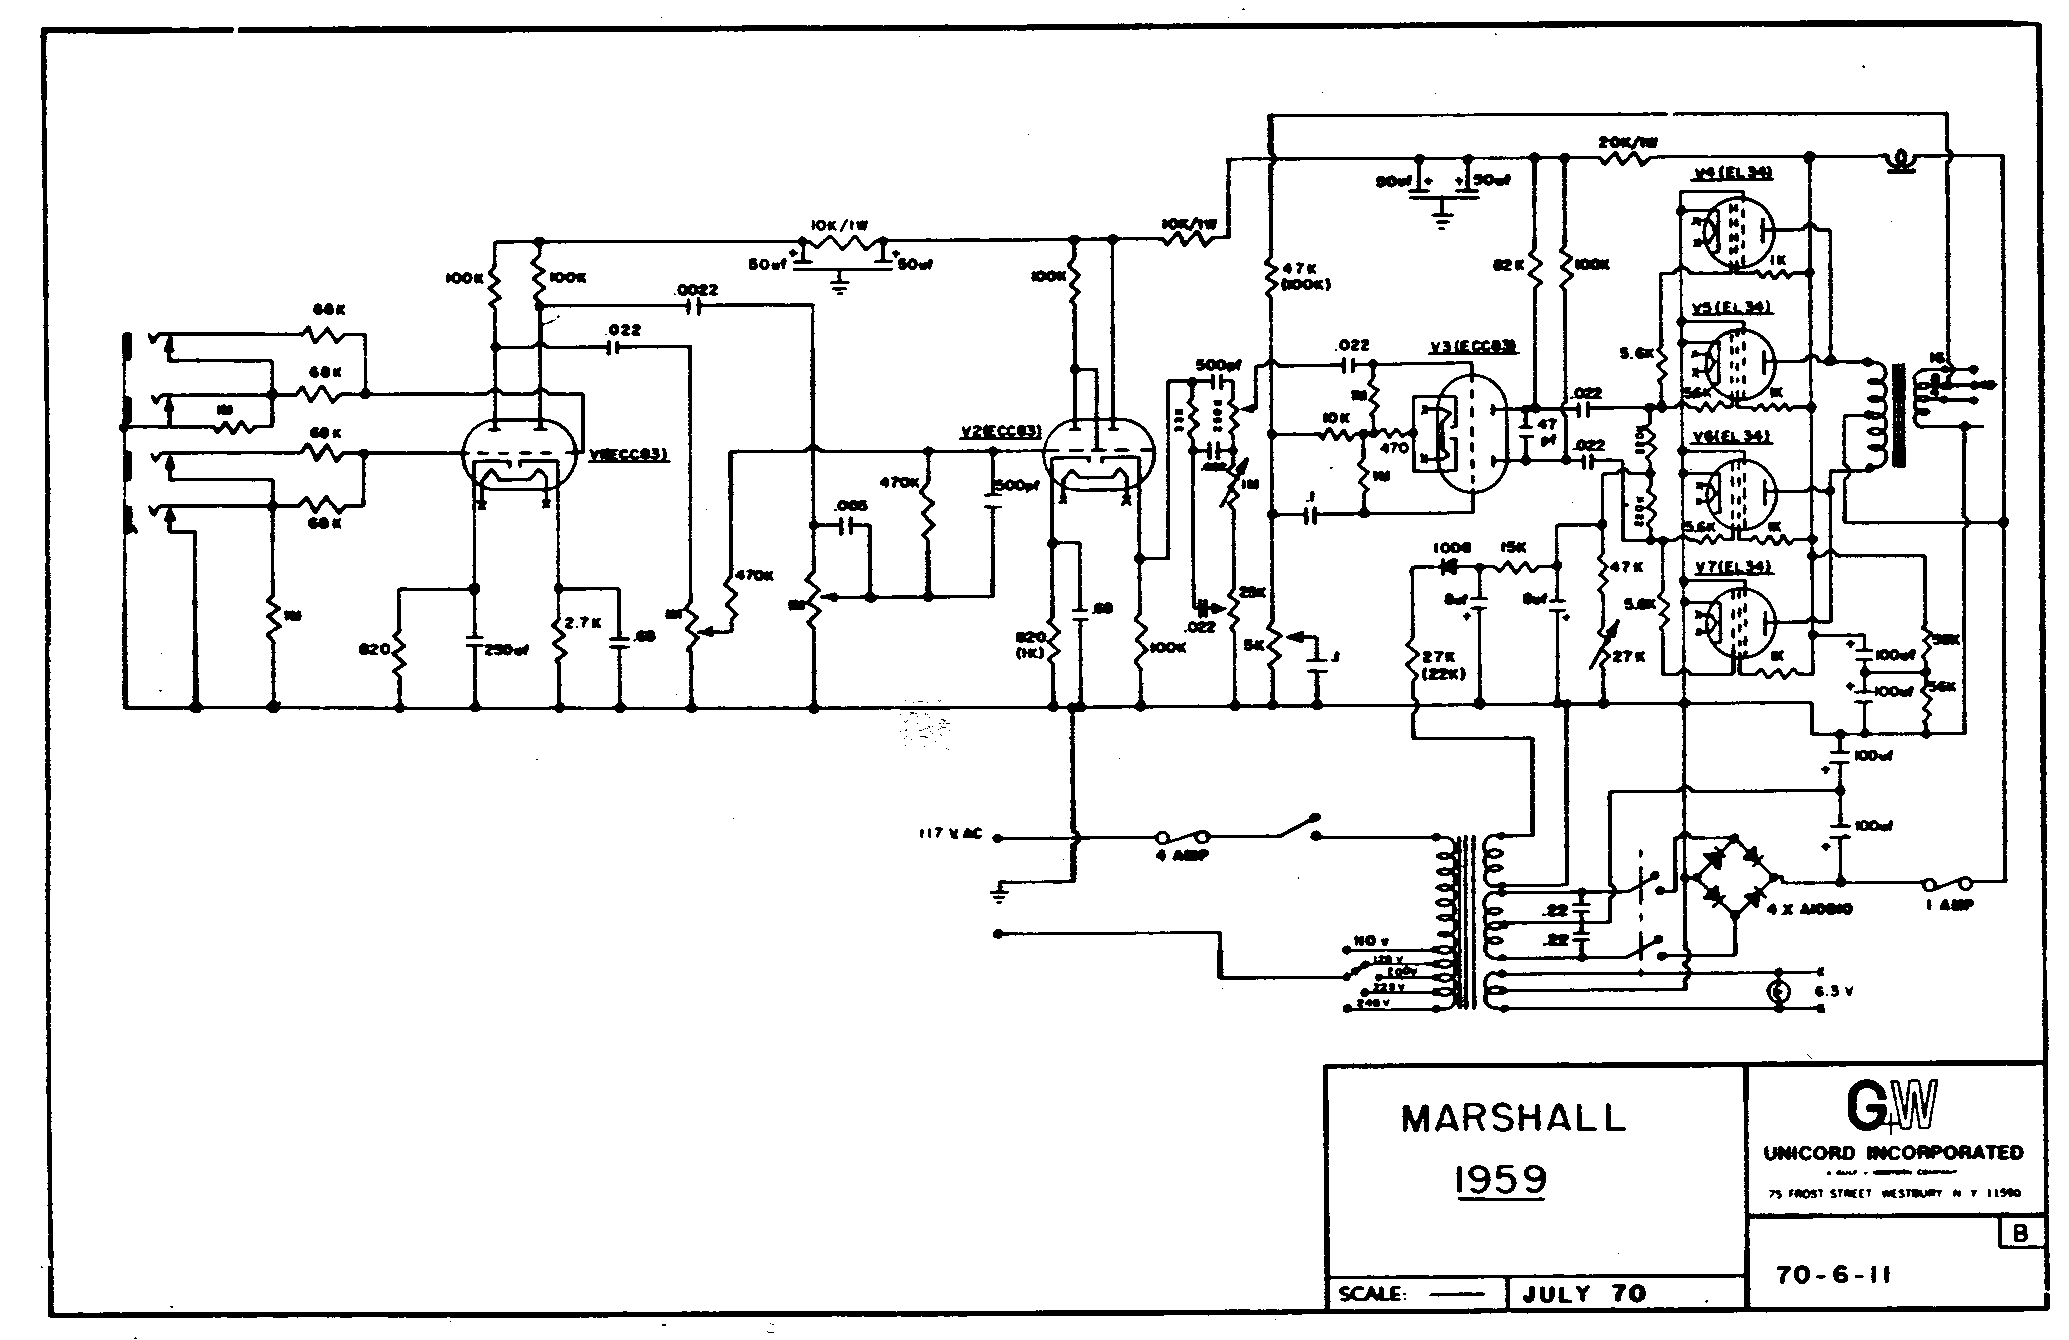 Marshall 1959 Schematic